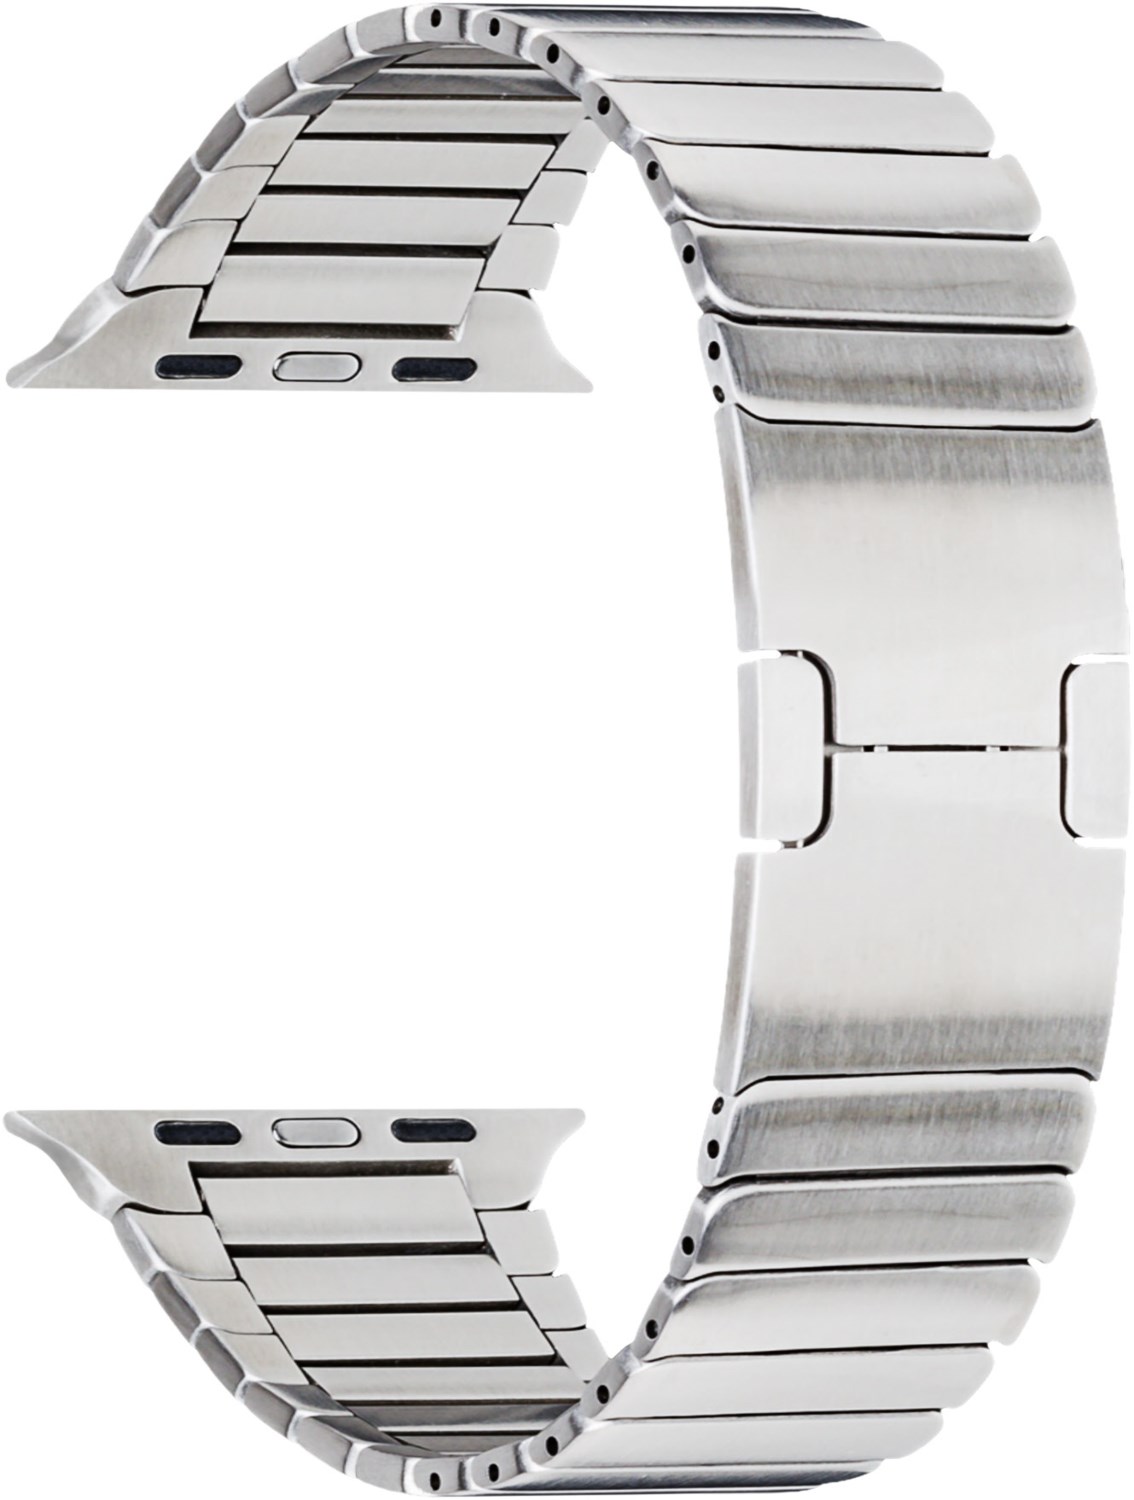 Metallarmband (42/44mm) für Apple Watch Series 3 silber von topp